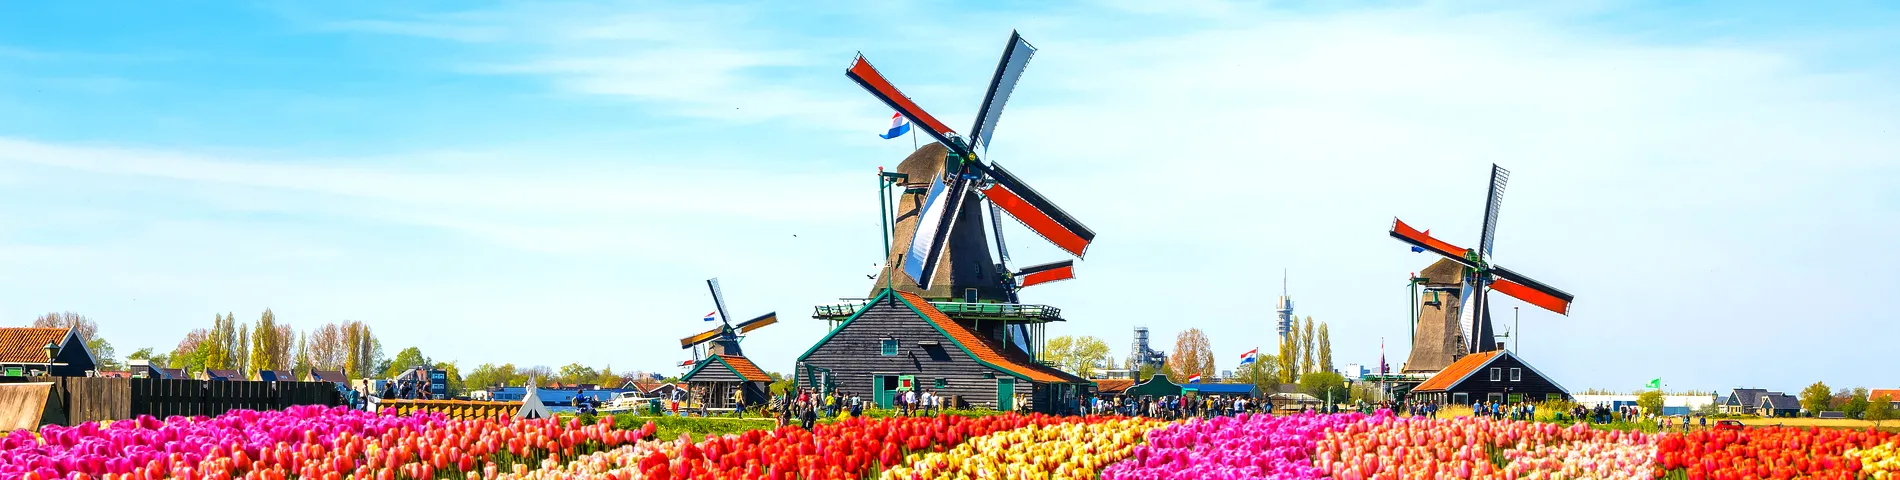 Niederlande - 